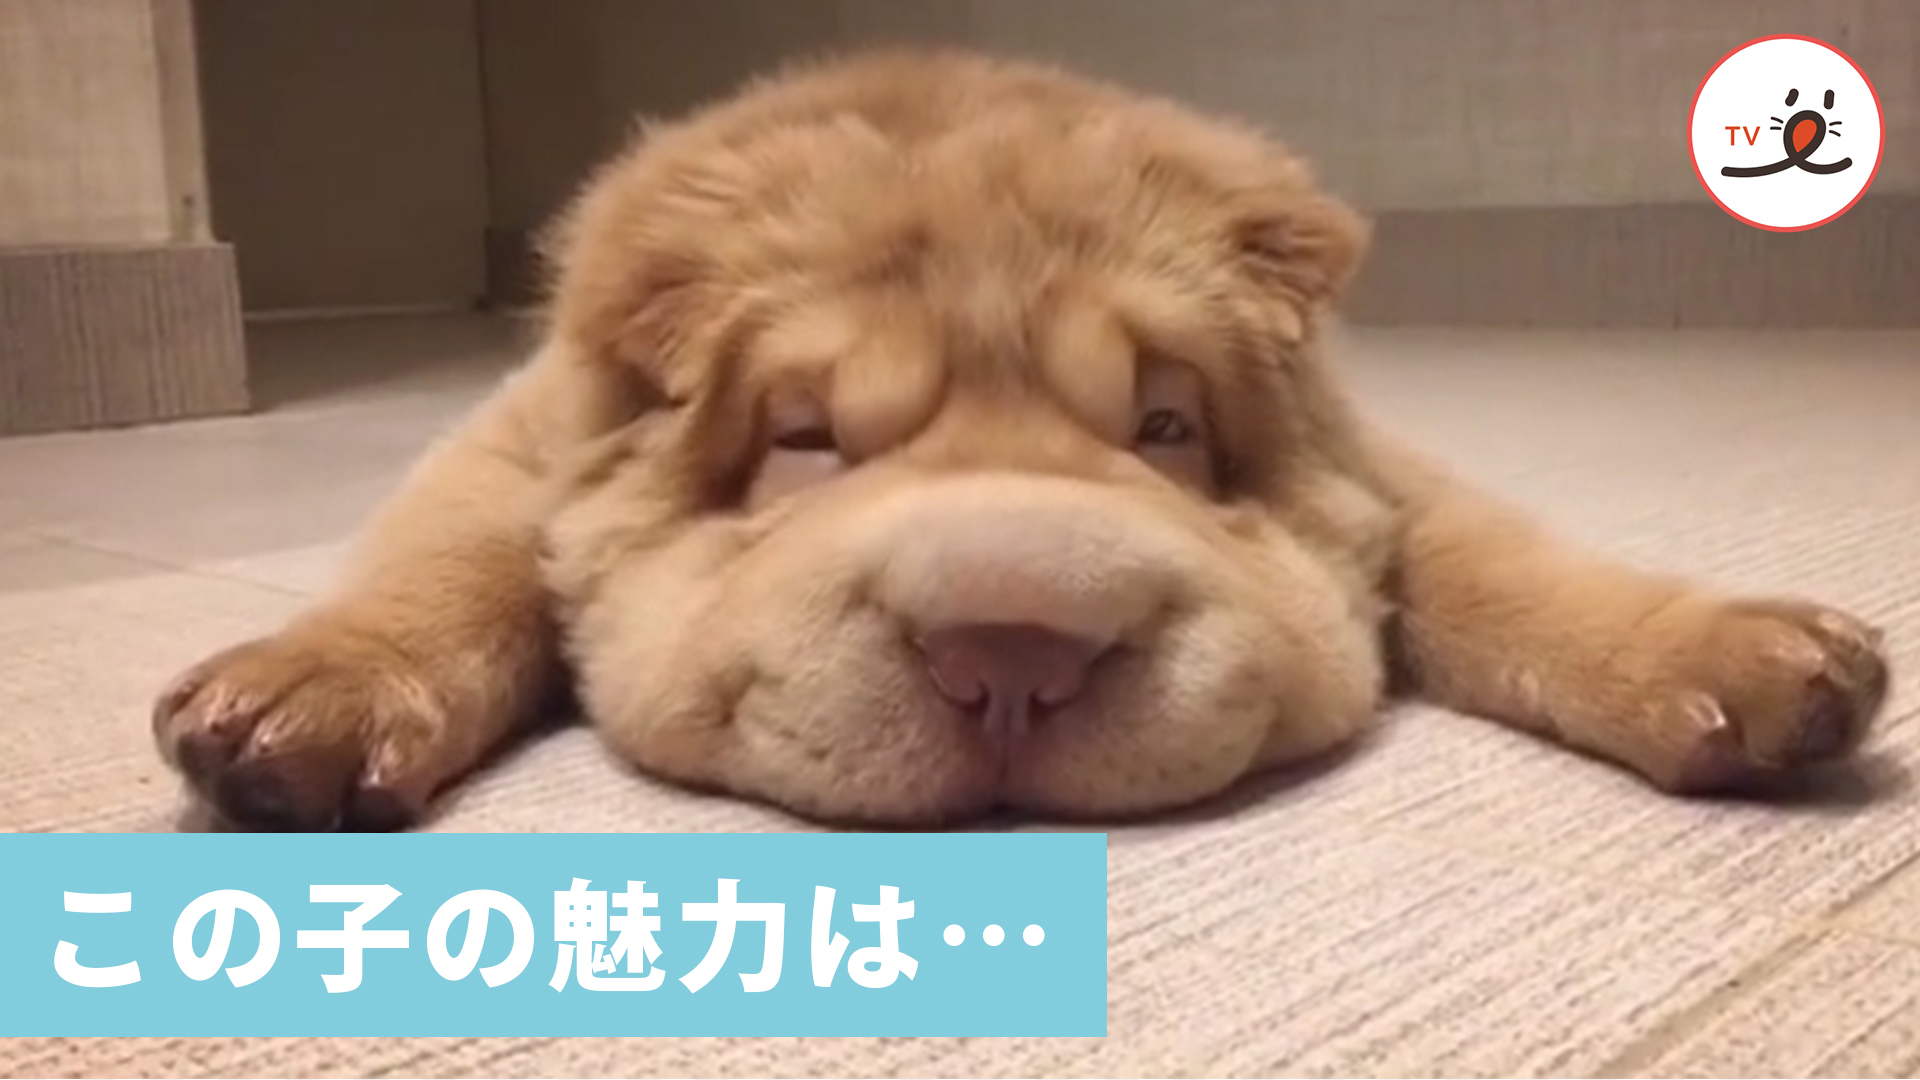 しわしわな顔がユーモラスなシャーペイ でも この犬の魅力はそれだけじゃありません Peco Tv Yahoo Japan